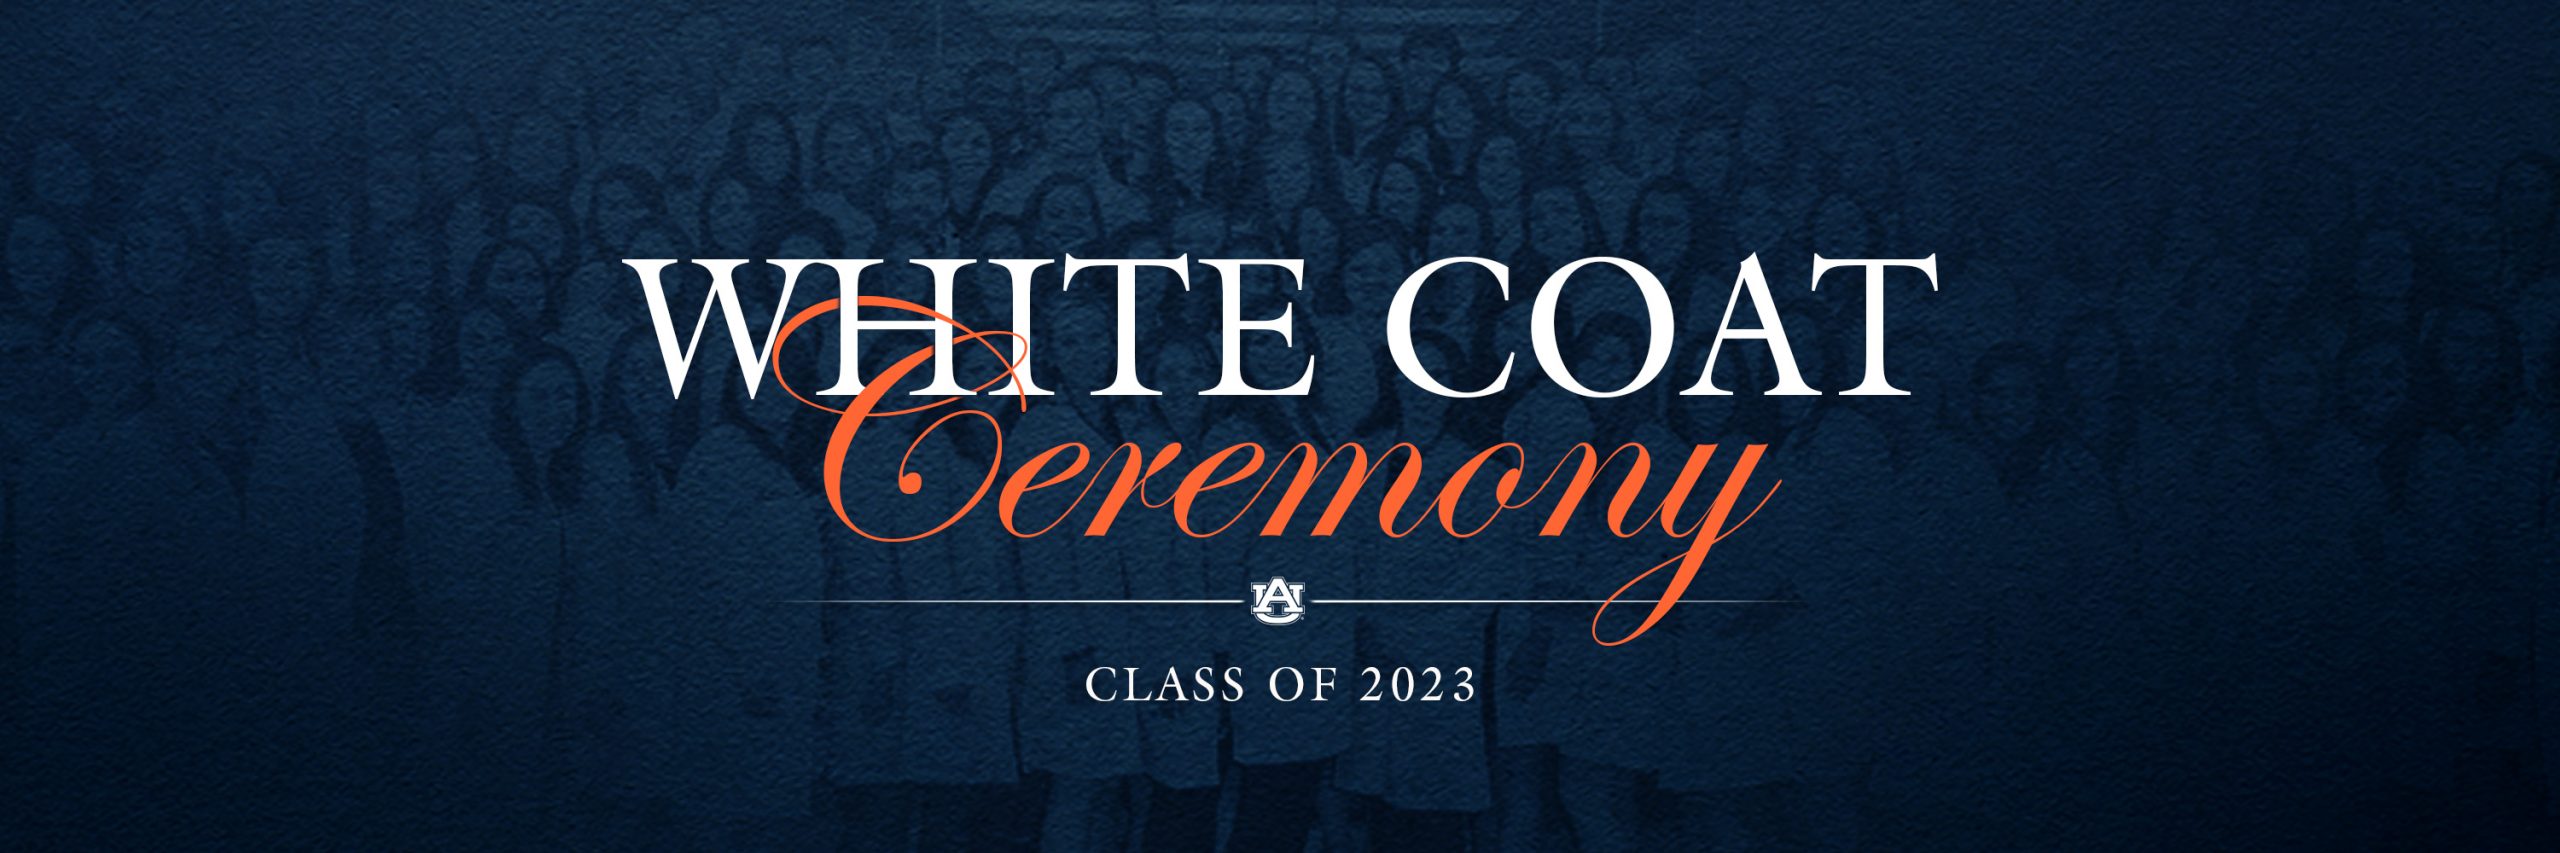 White Coat Ceremony Class of 2023